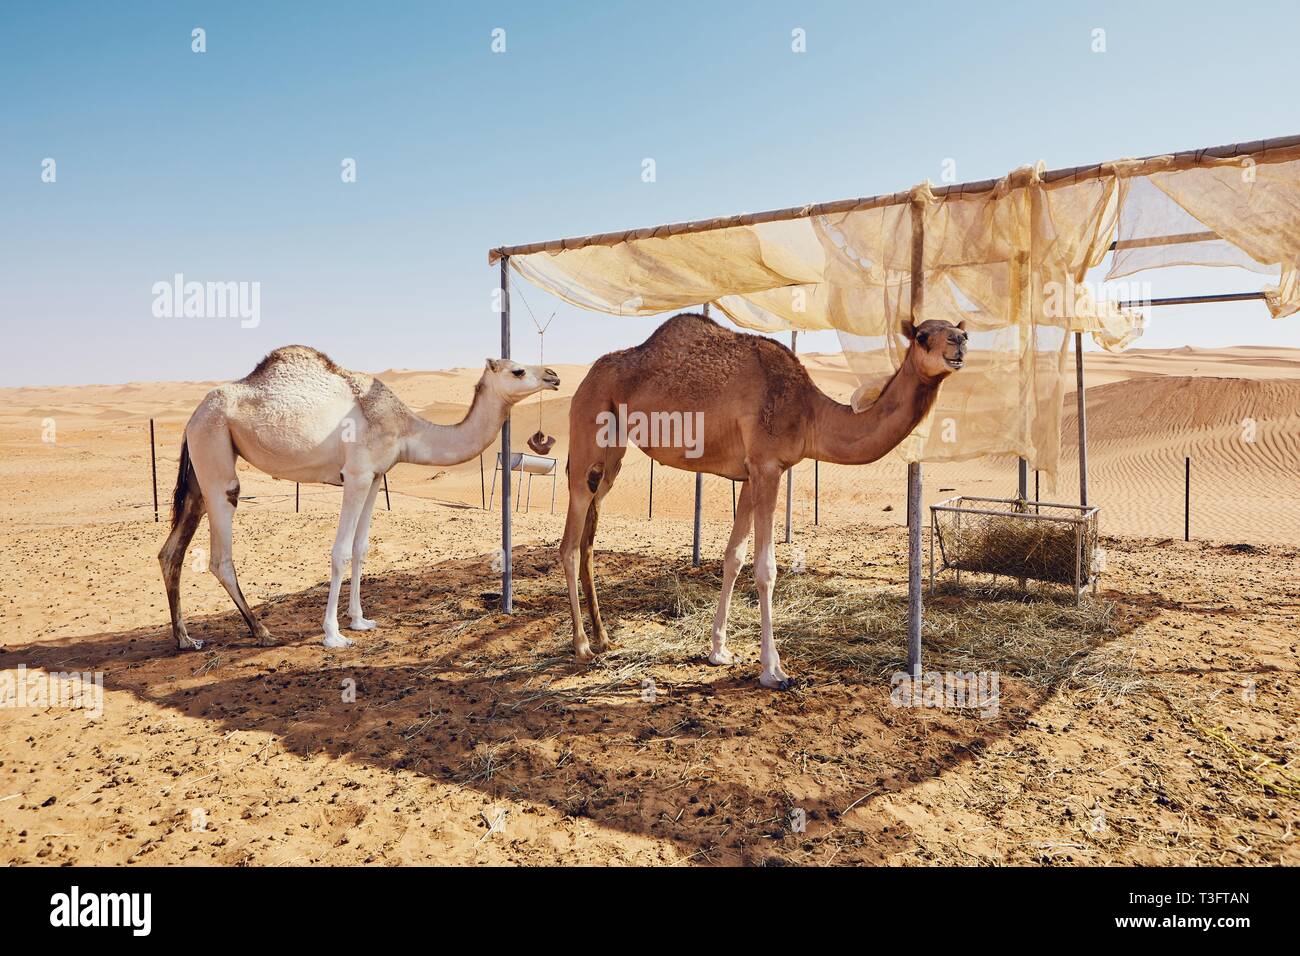 Deux chameaux en camp bédouin contre les dunes de sable. Whaiba Sands, Oman Banque D'Images